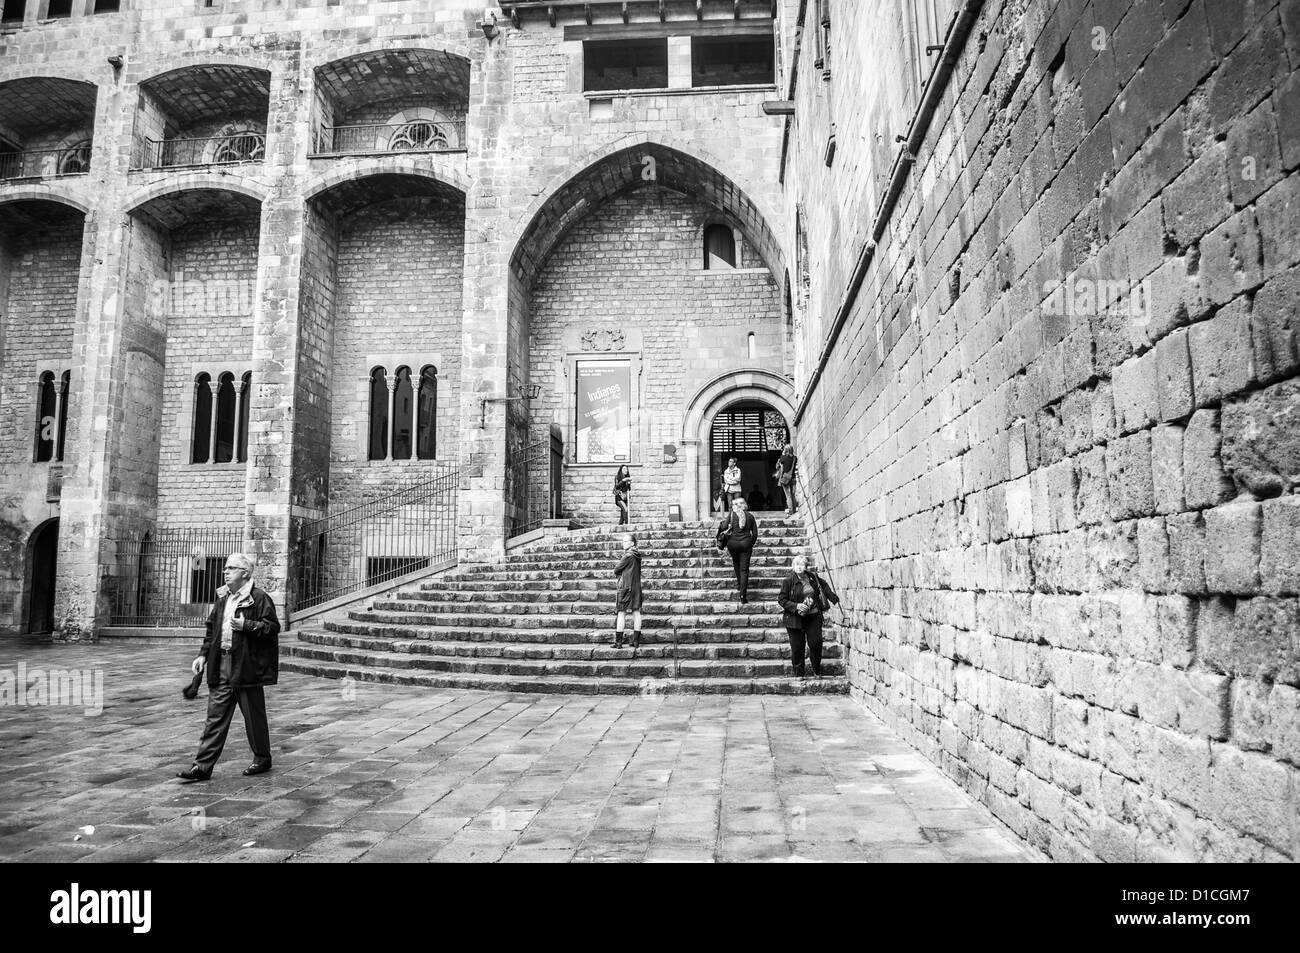 Einstieg in die imposante steinerne Gebäude von Barcelona History Museum. Ausgegrabenen Abschnitt der ehemaligen römischen Stadt auf dem Display im Inneren. B&W Stockfoto